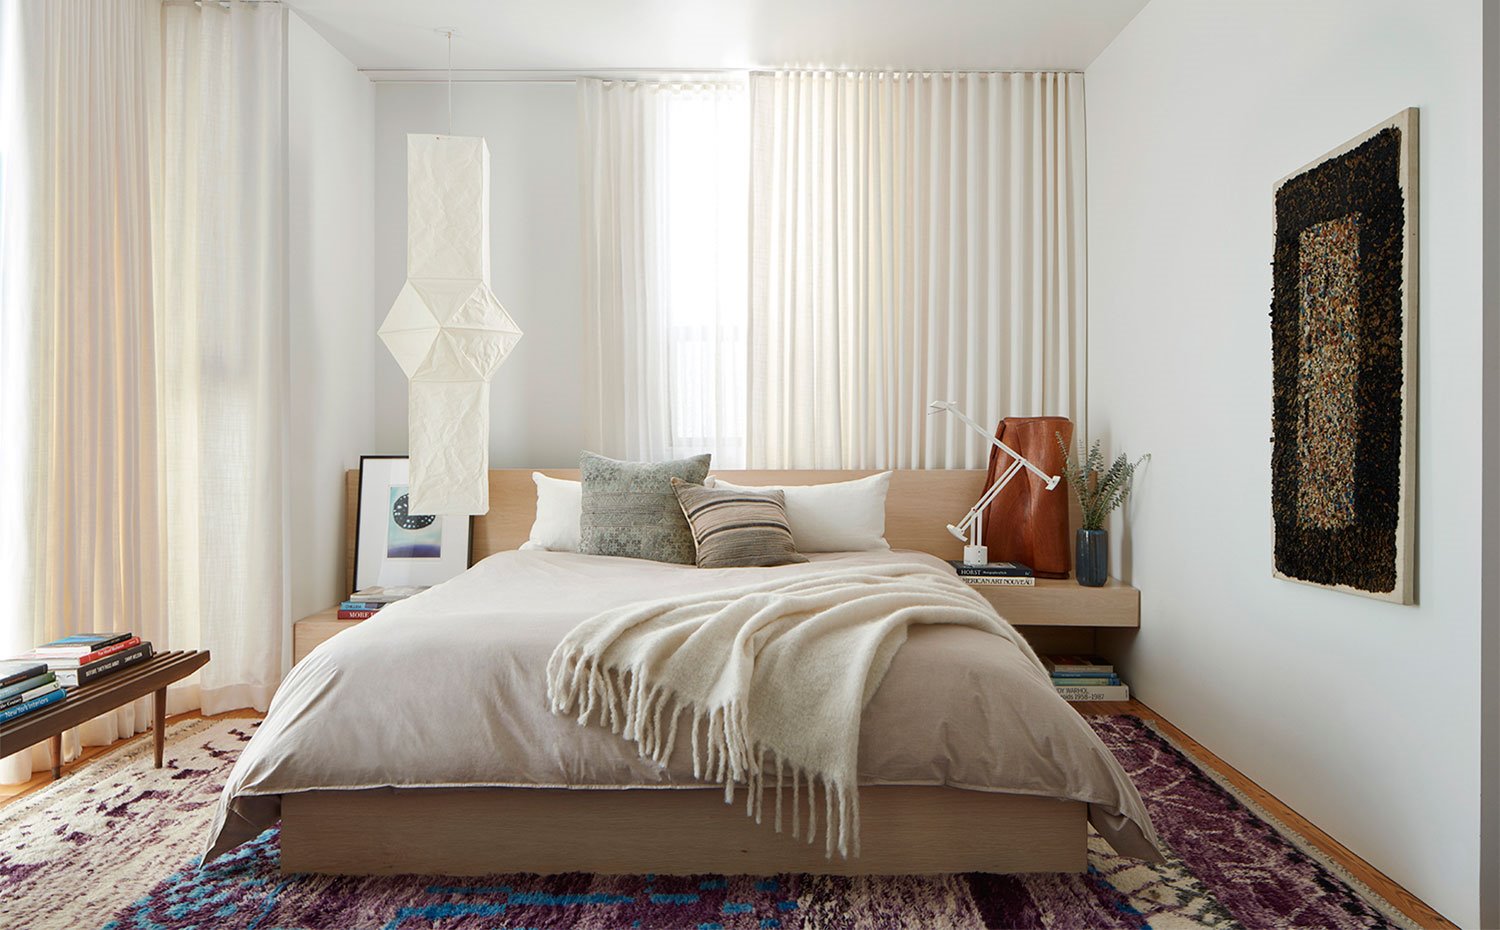 Dormitorio con alfombra multicolor, cortinas en crido, mueble cabecero, bancada de madera con libros, luminaria suspendida de pared